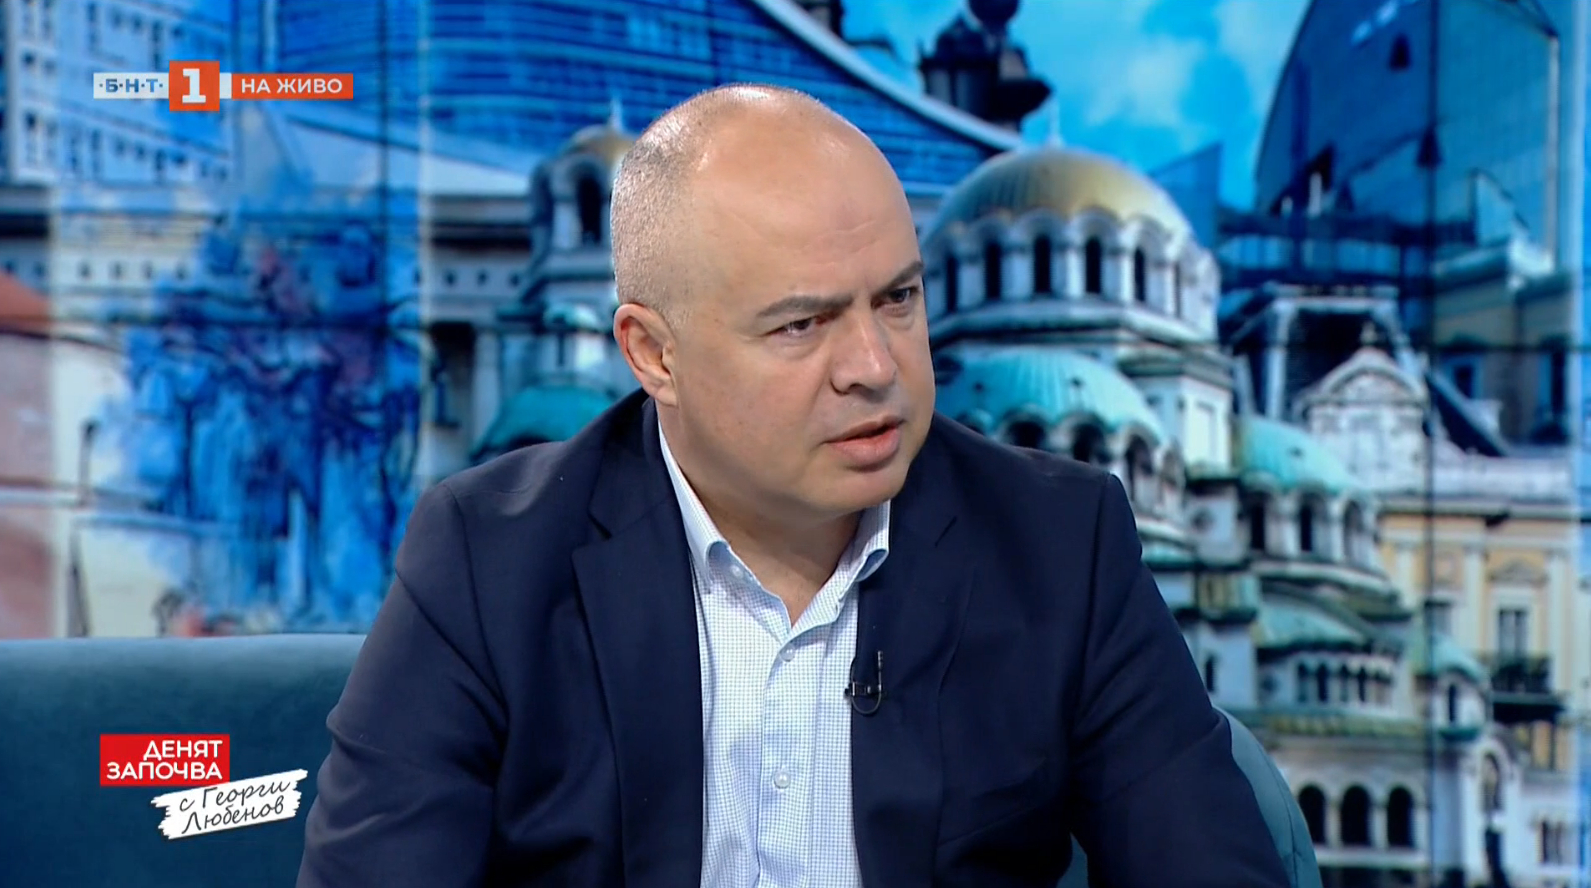 Георги Свиленски: БСП действа единствено в български интерес, като е против санкции срещу Русия